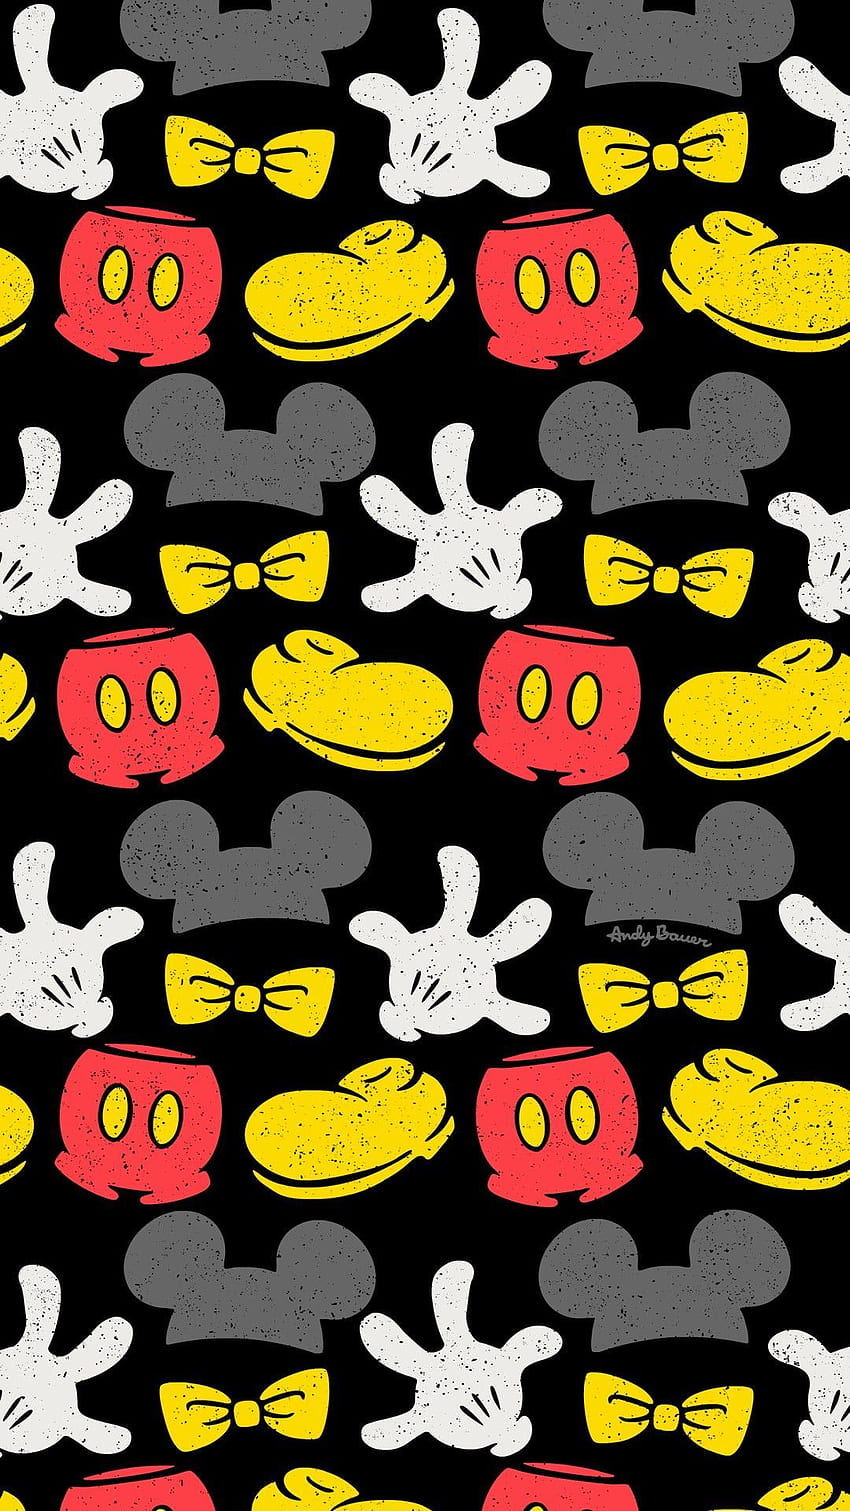 ミッキーマウス リピートパターン 表面デザイン ディズニーアート イラスト ドローイングフォン アイコニック。 Disney art, Repeating patterns, Phone background patterns HD電話の壁紙